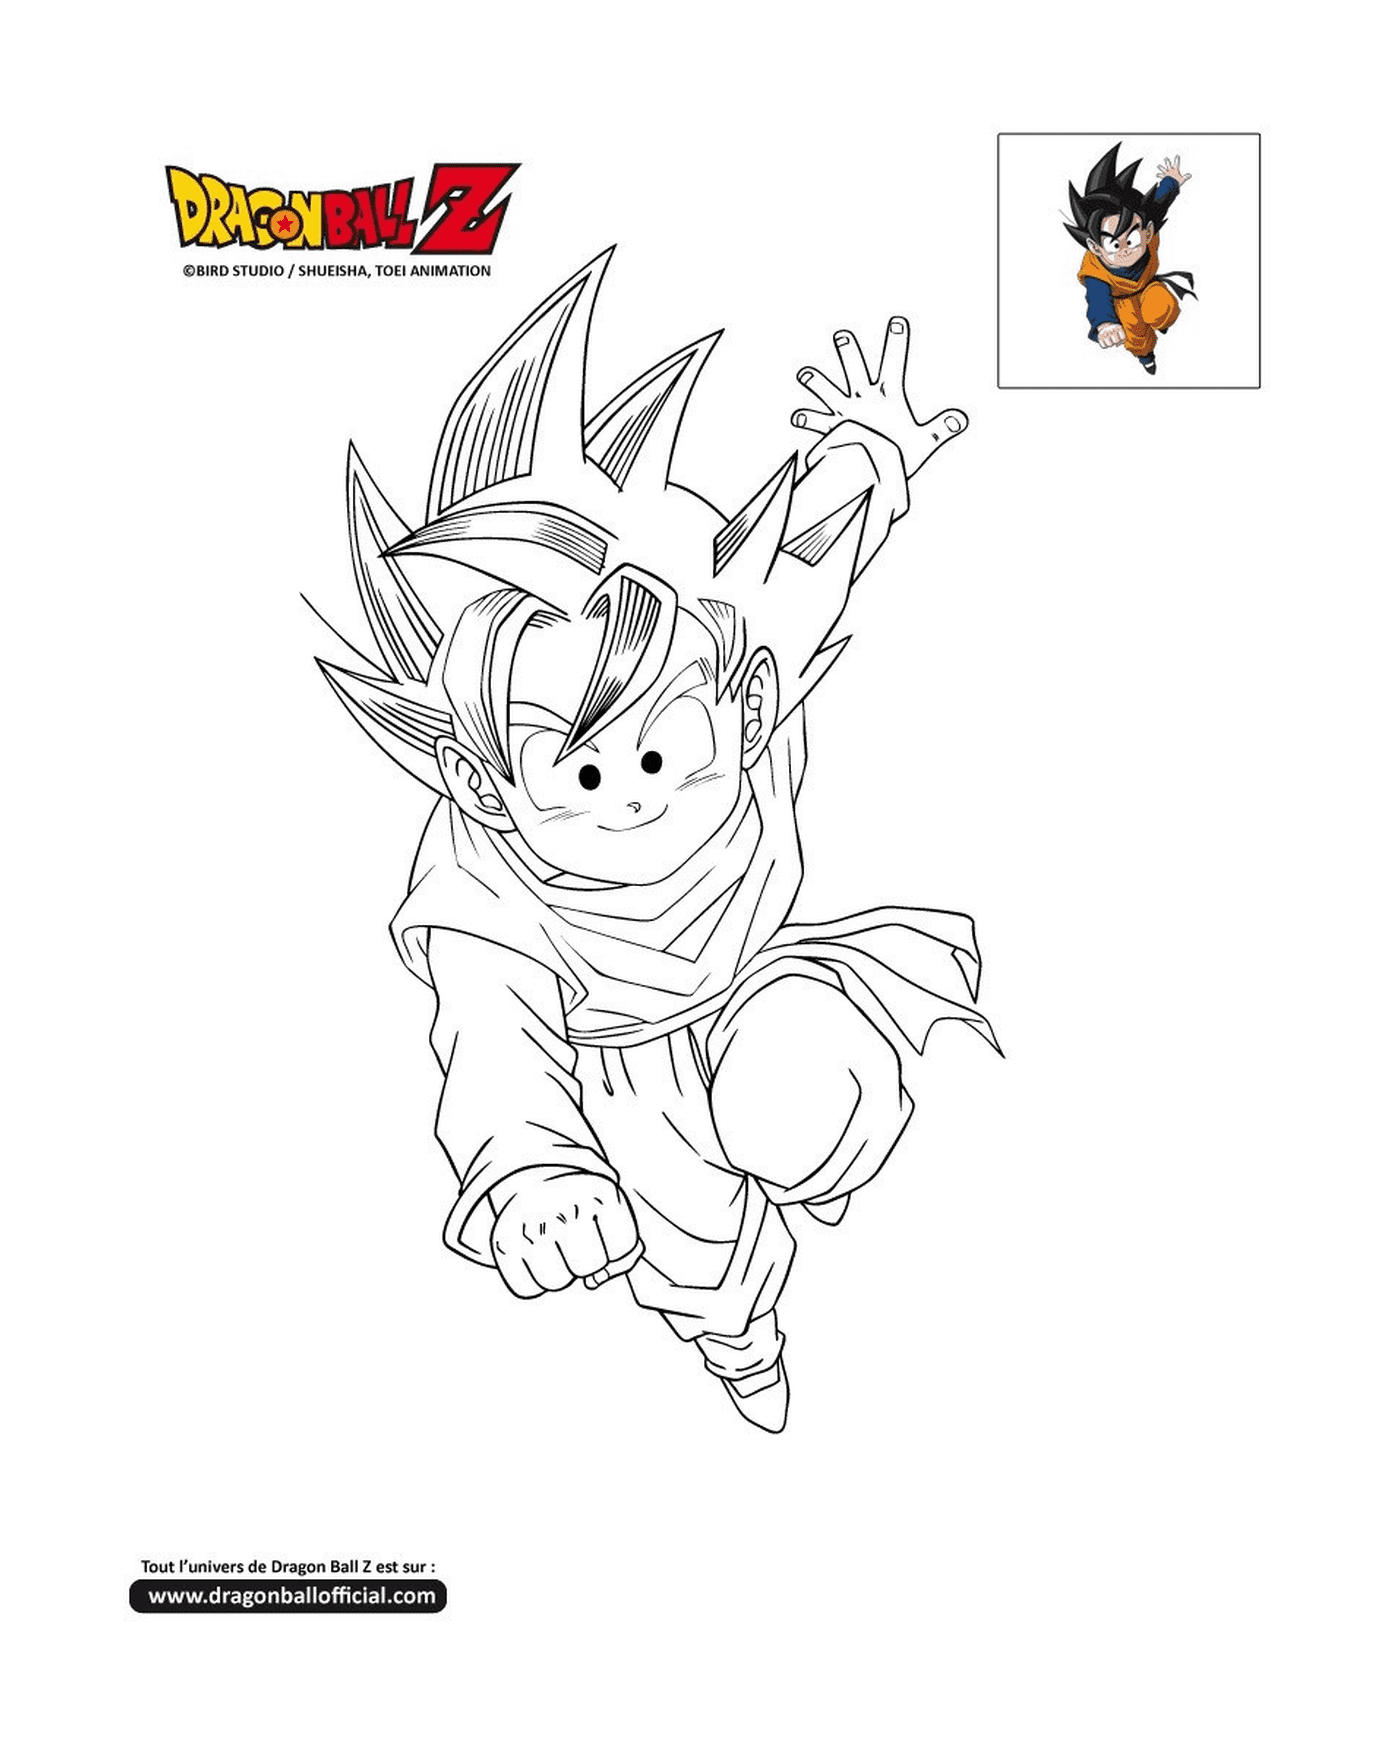  Goten, un giovane Goku che salta in aria a Dragon Ball Z 